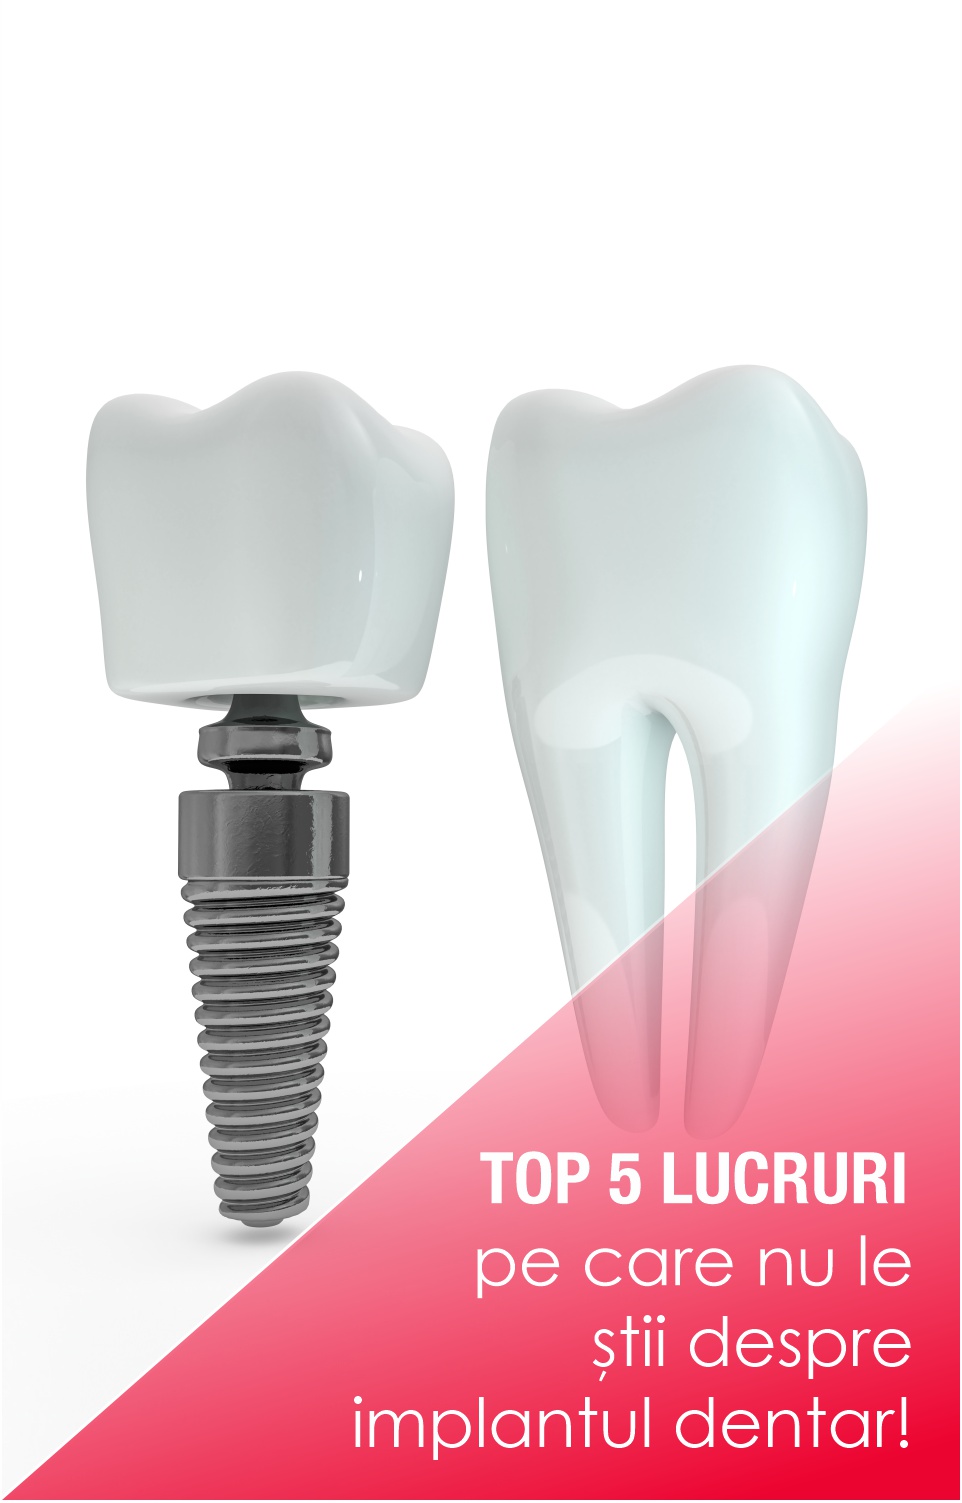 Top 5 lucruri pe care nu le știi despre implantul dentar!